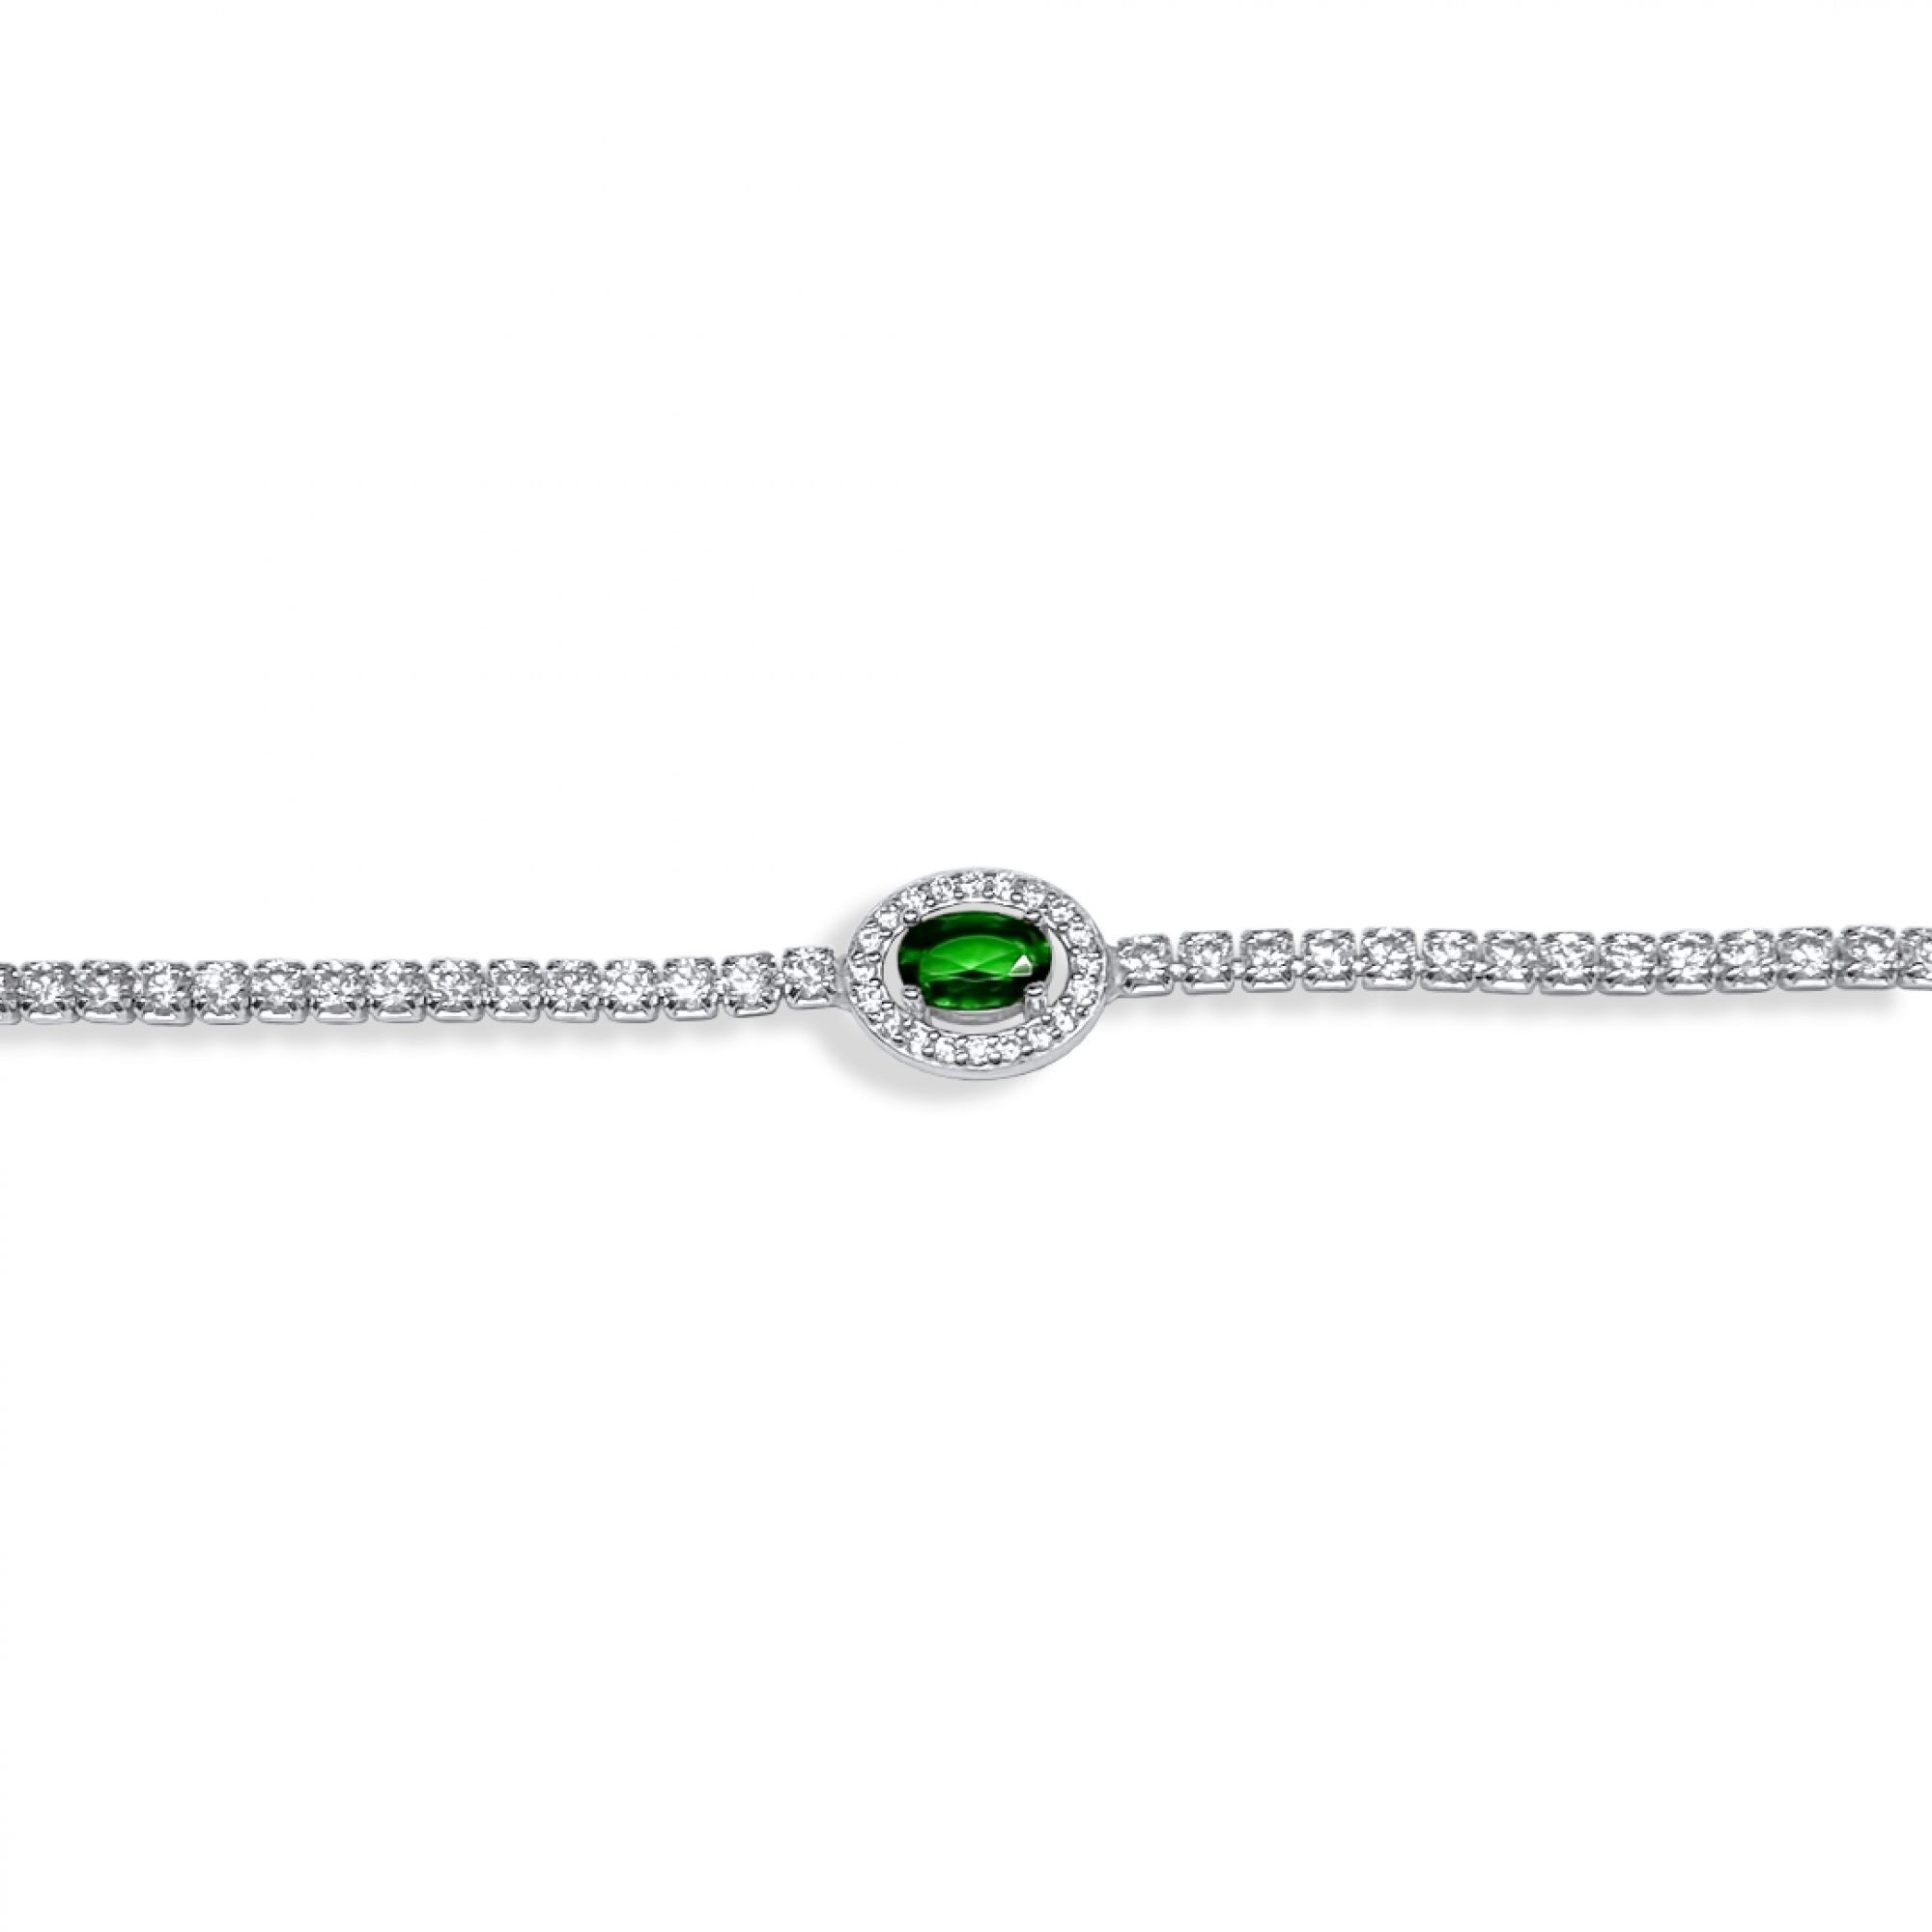 Bracelet with emerald and zircon stones